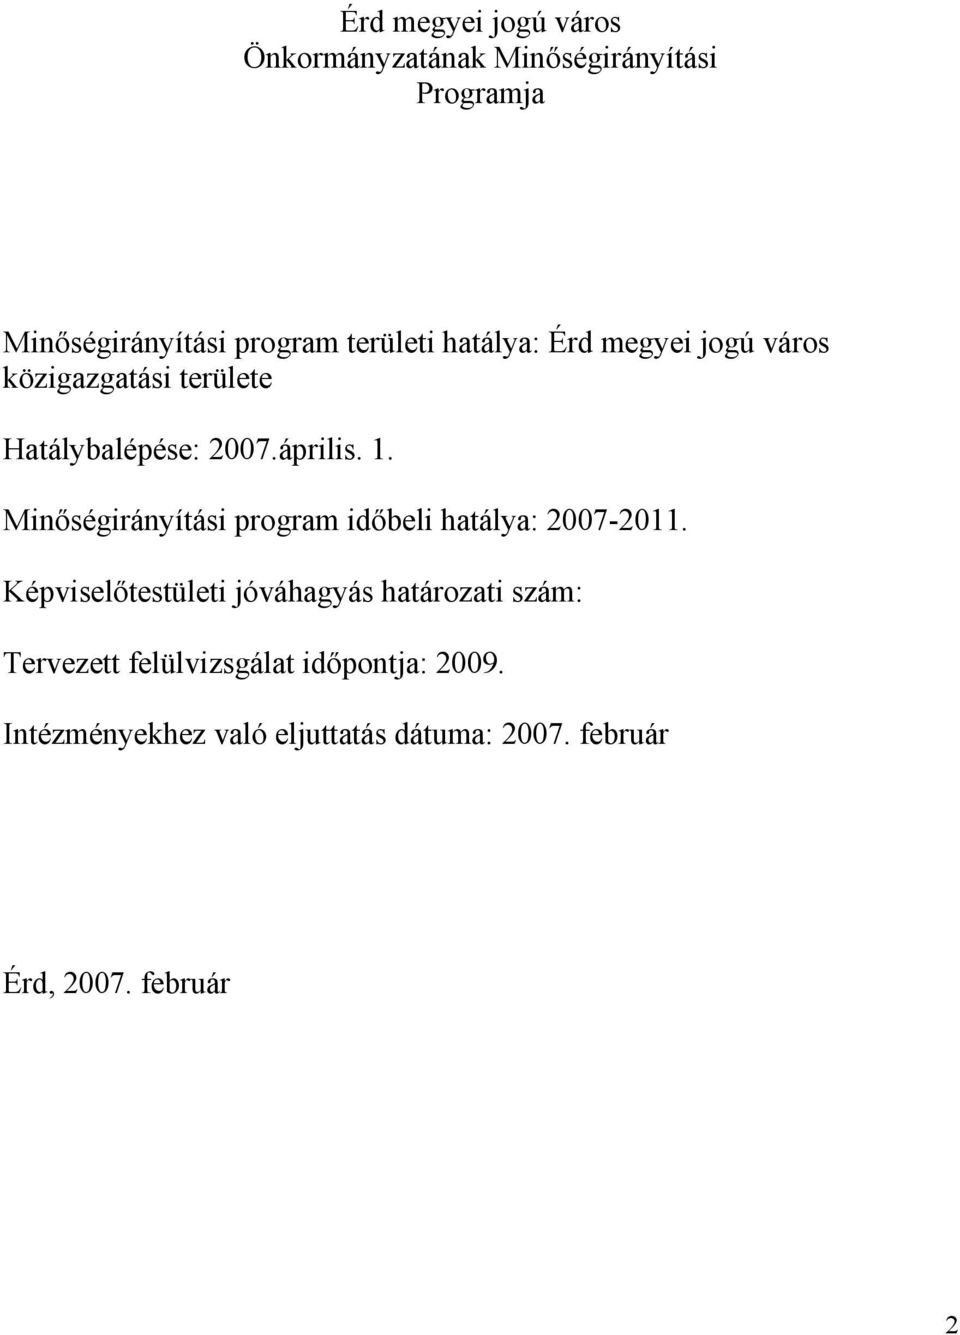 Minıségirányítási program idıbeli hatálya: 2007-2011.